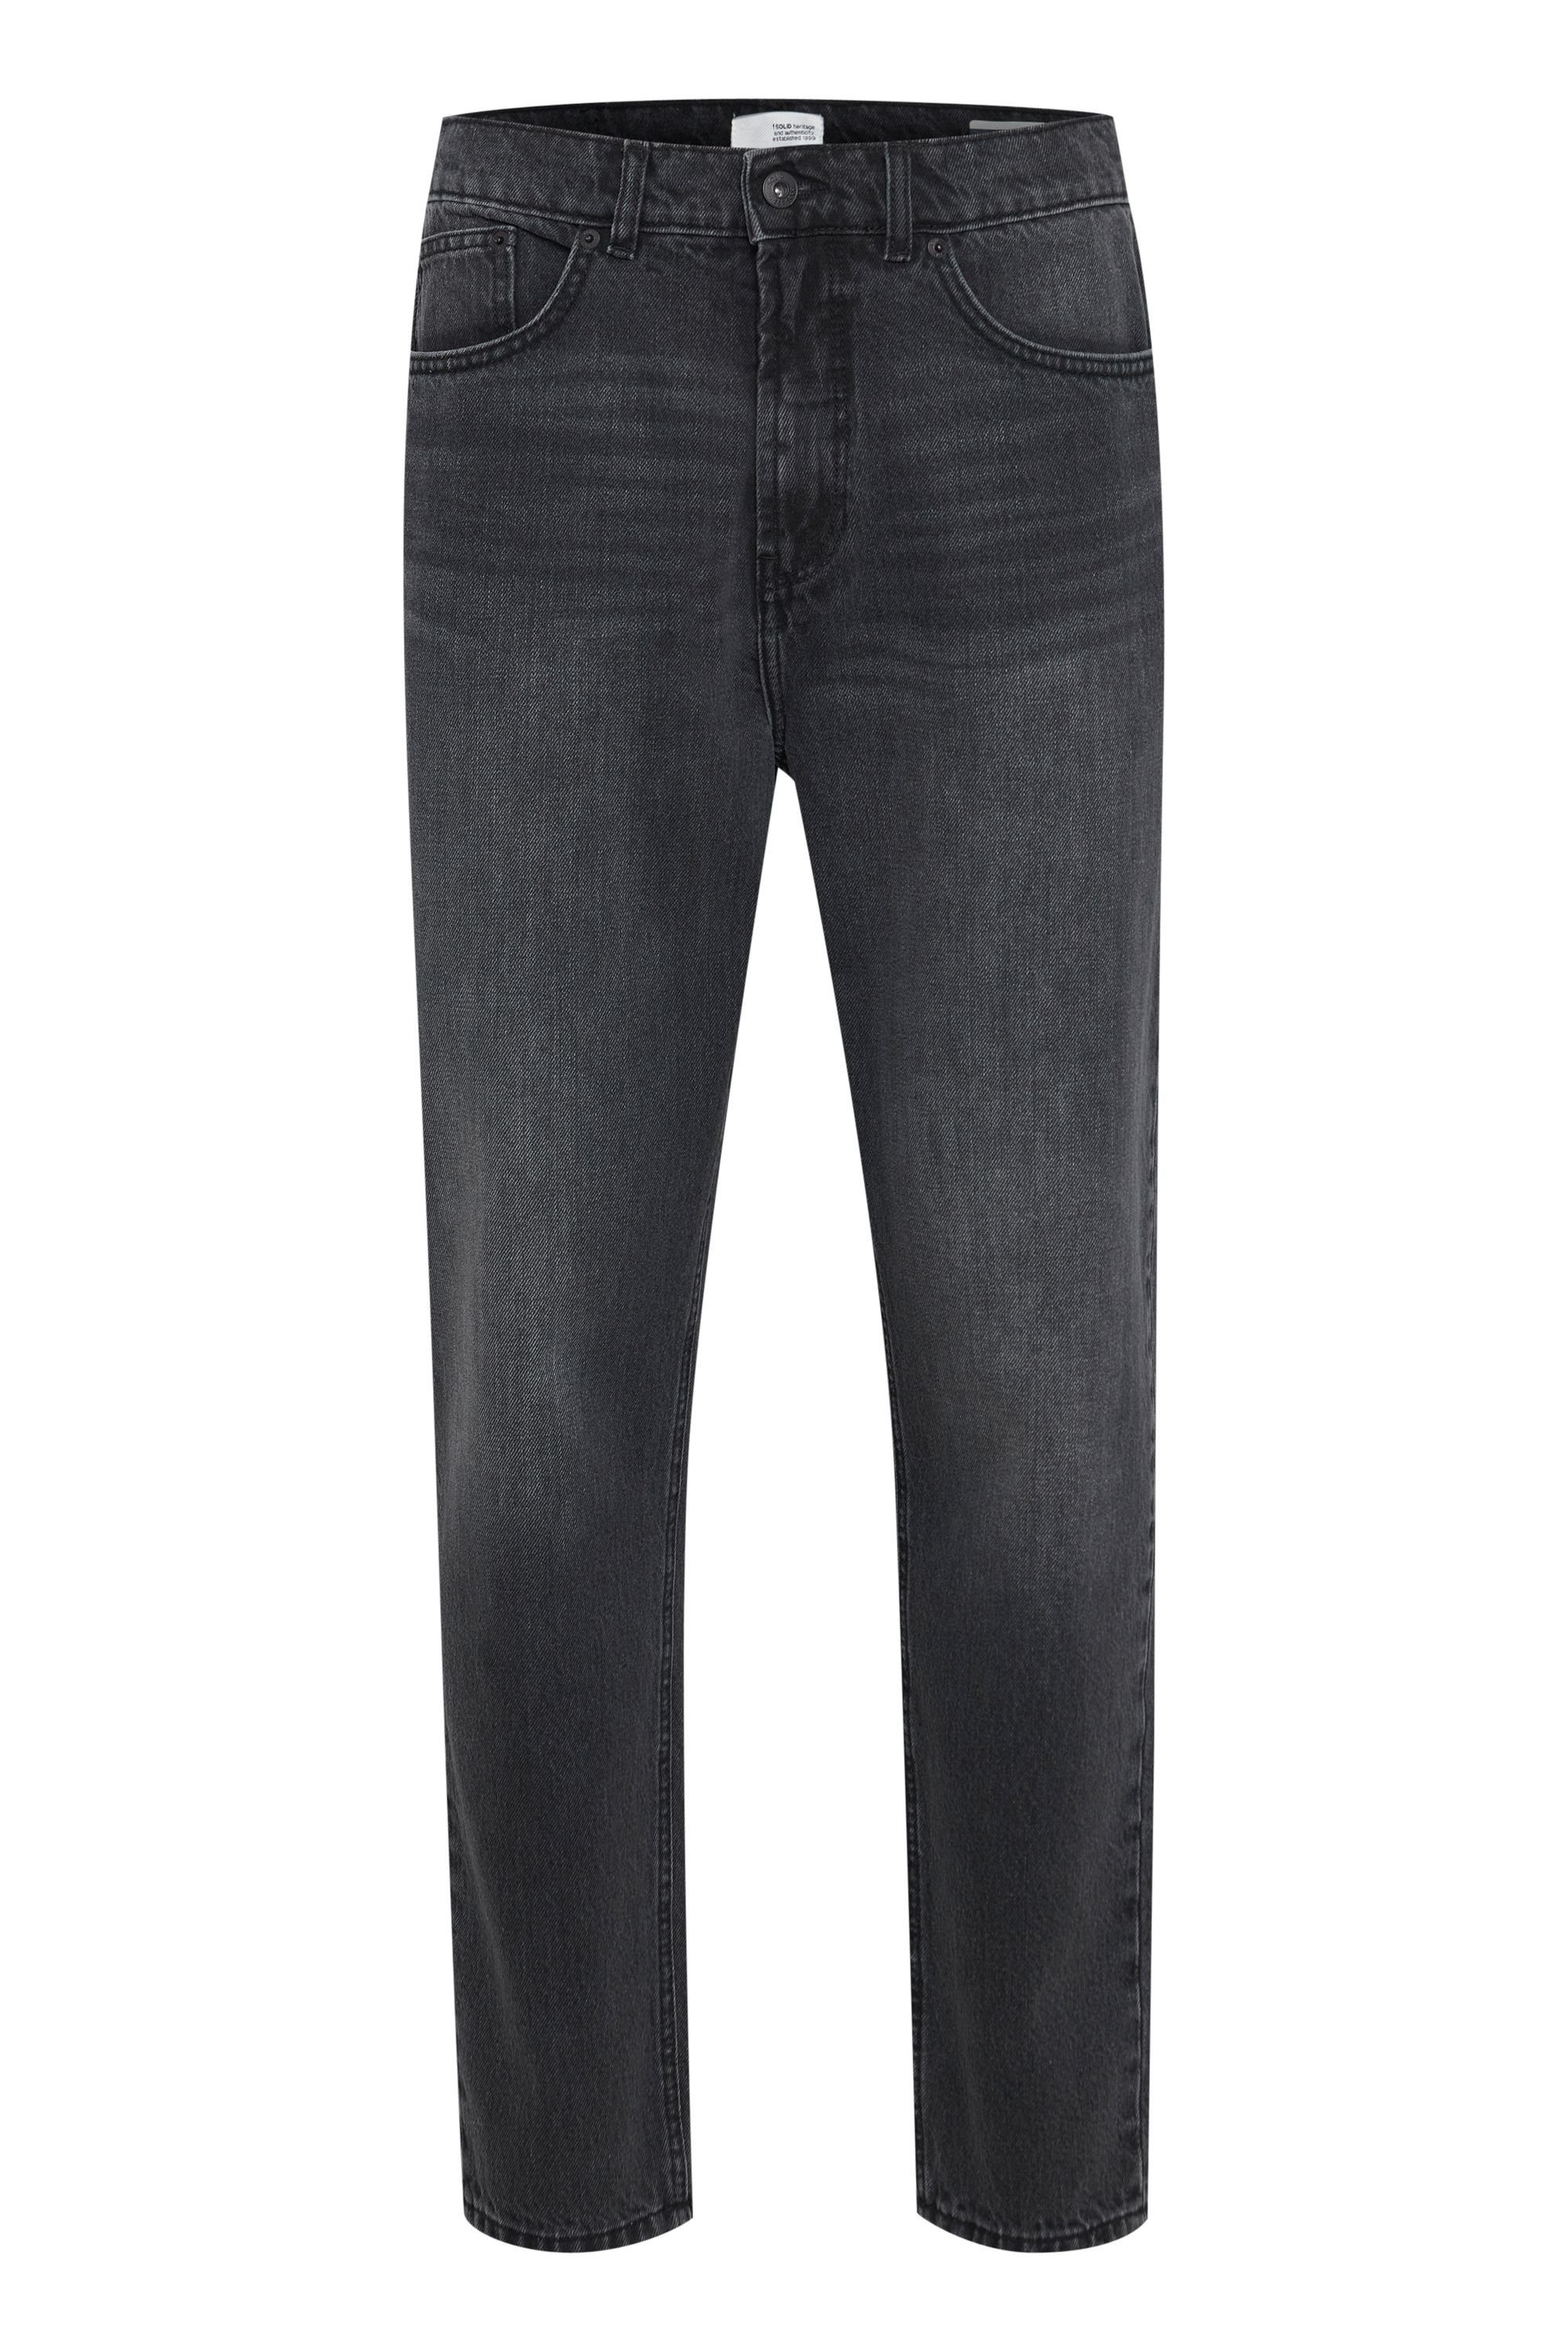 !Solid 5-Pocket-Jeans SDBoaz Black Vintage Denim (700036)